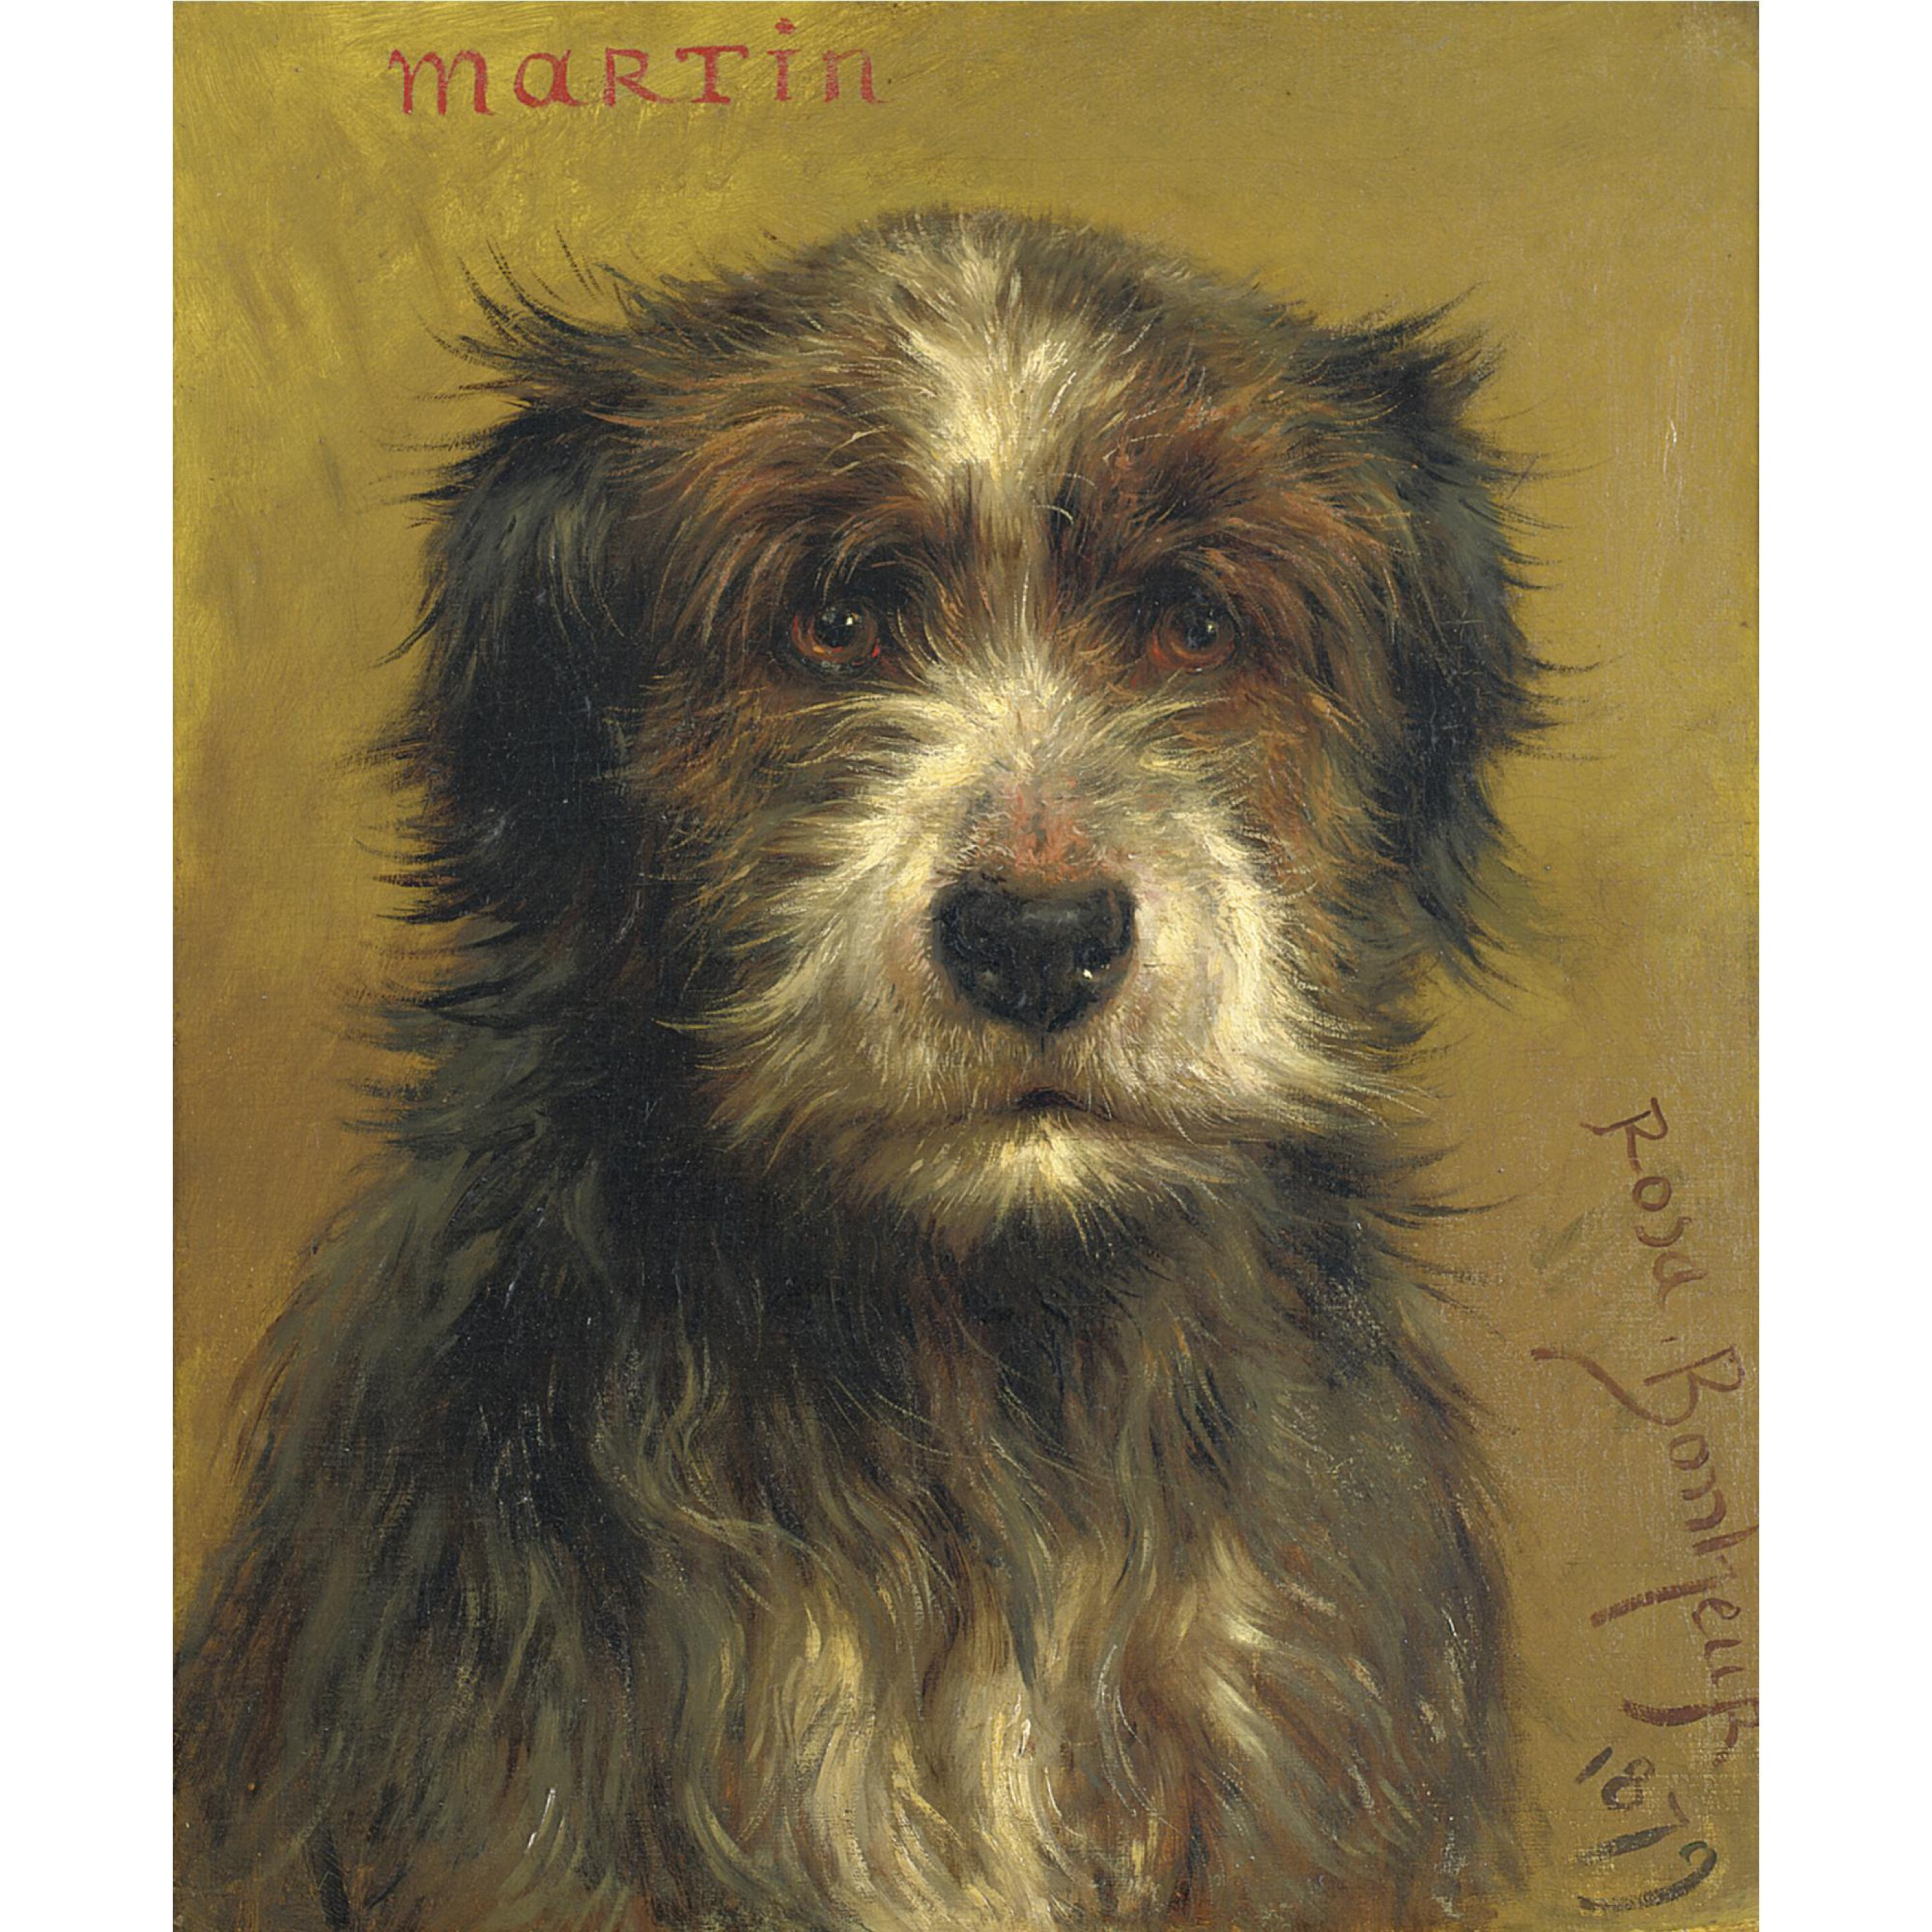 Martin, um terrier by Rosa Bonheur - 1879 - 47 x 37,2 cm coleção privada